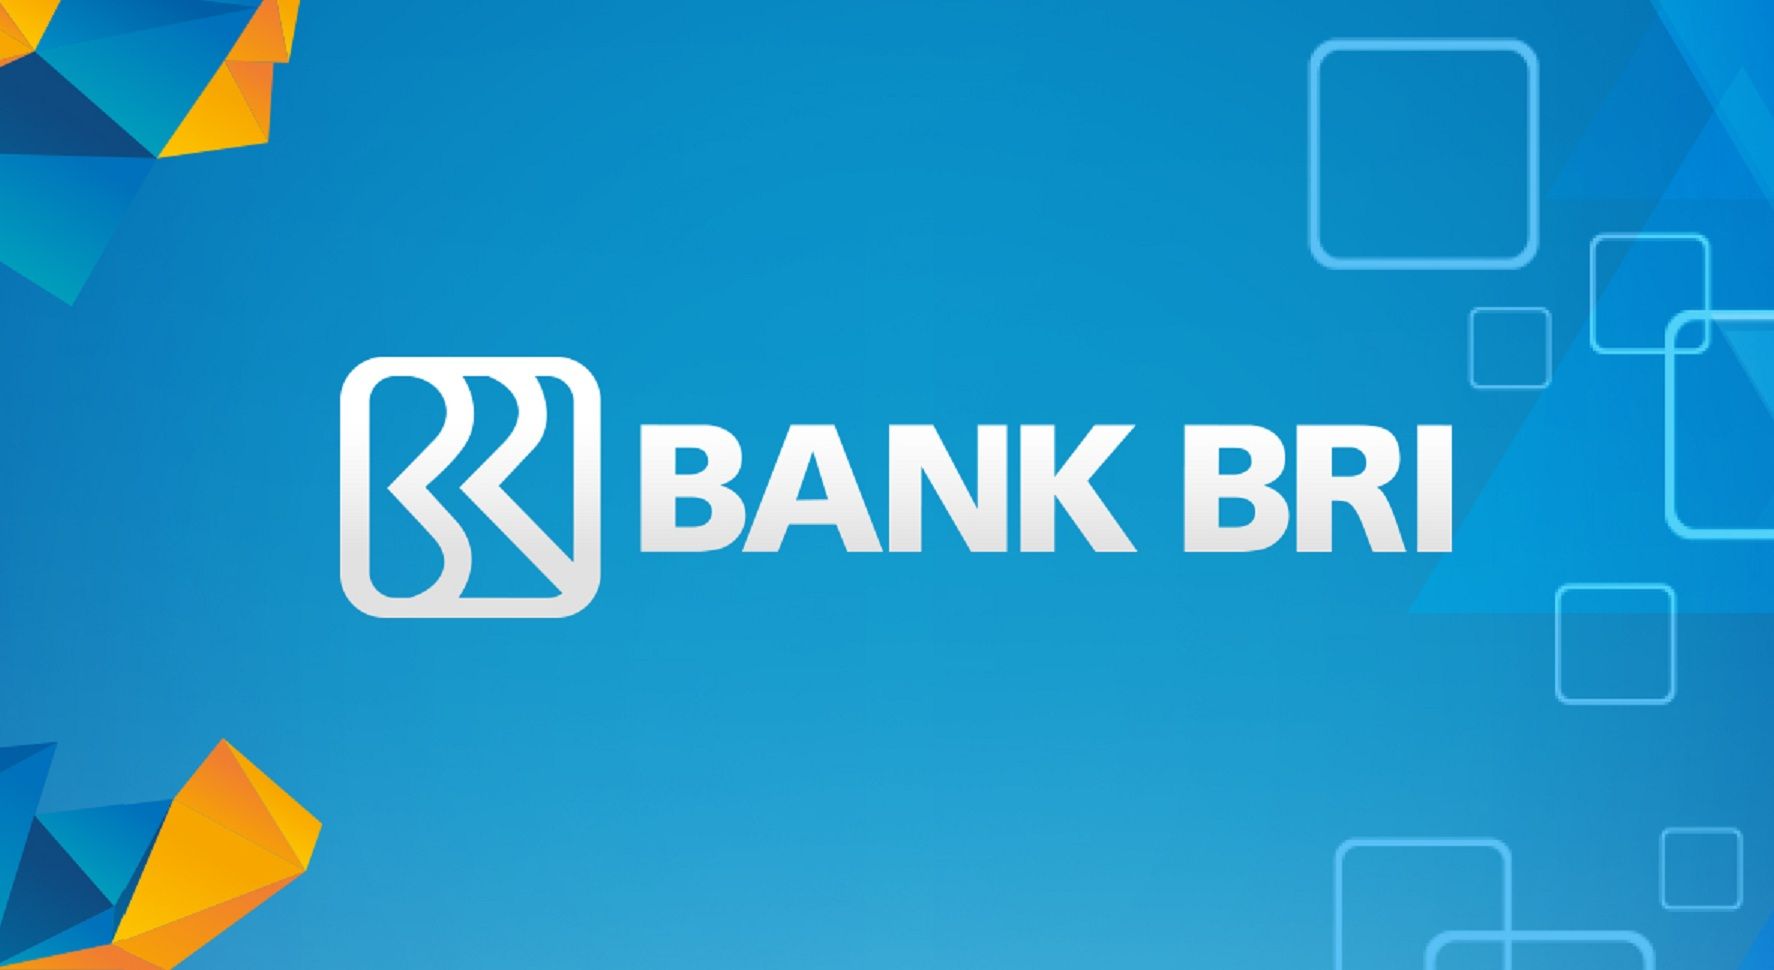 Logo Bank BRI. UMKM bisa mendapatkan pinjaman modal dari KUR BRI secara online hingga Rp100 juta tanpa jaminan tambahan.